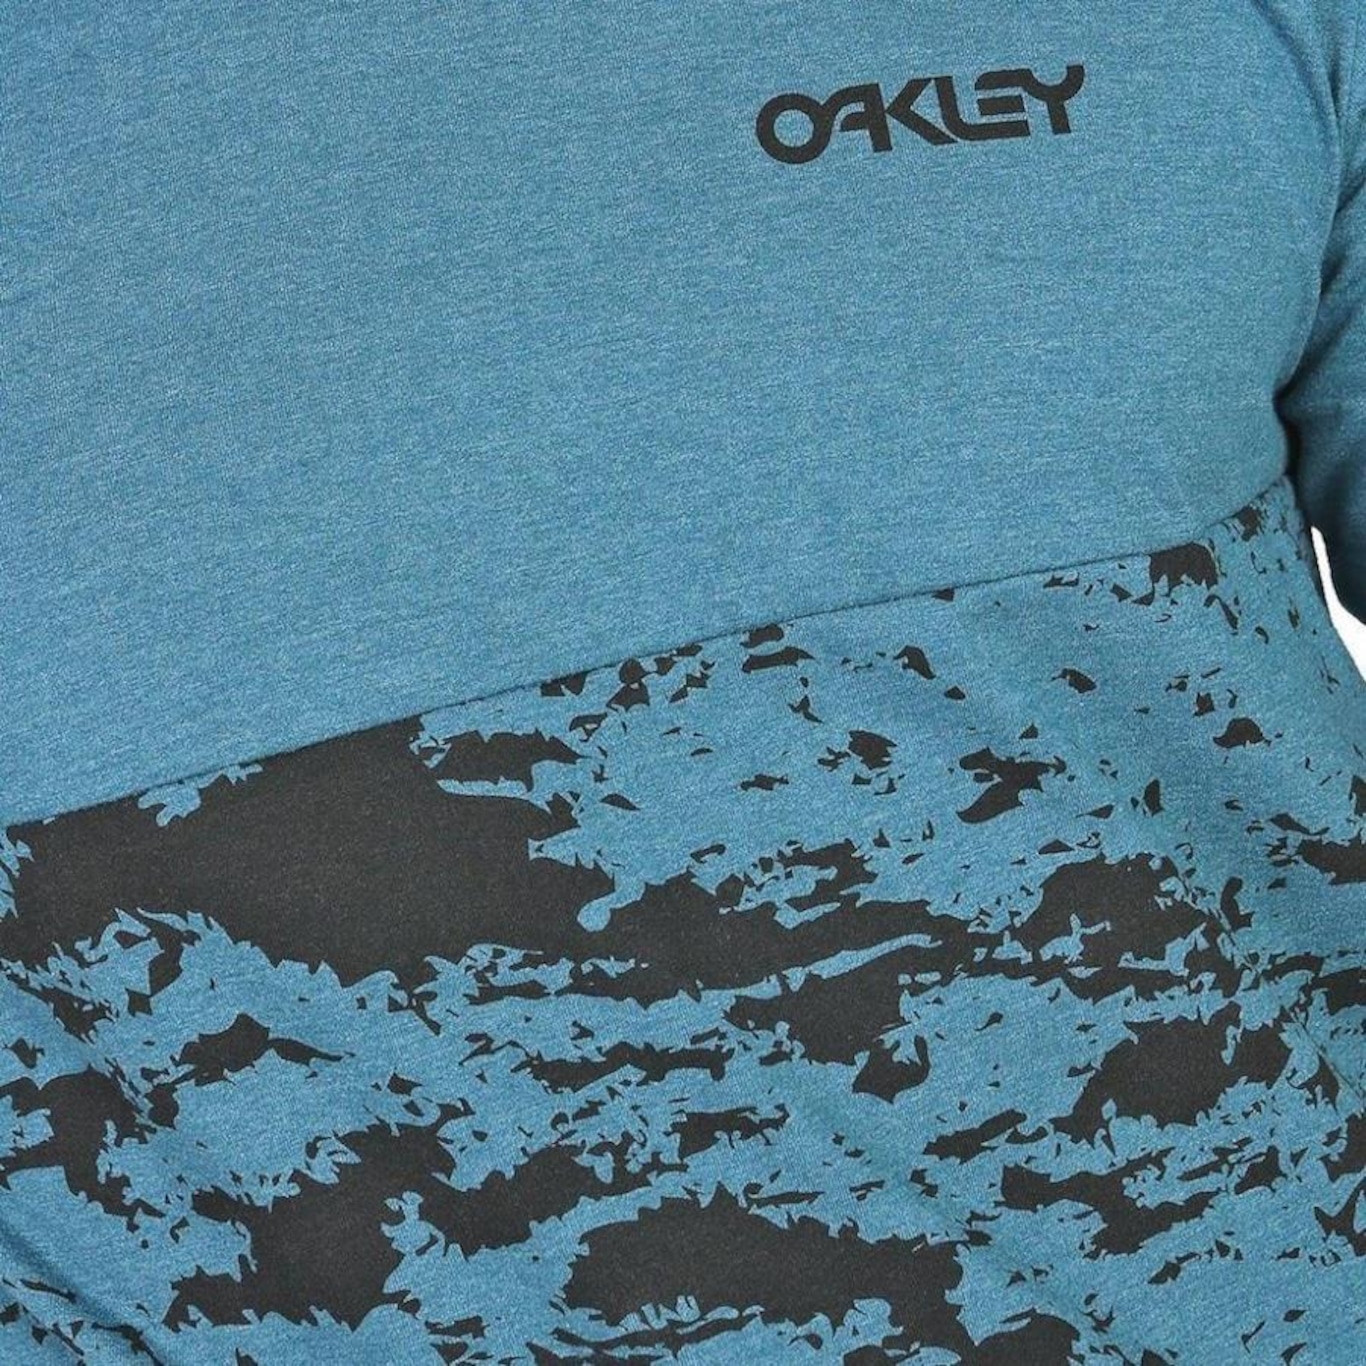 Camiseta Oakley Abstract Logo SS Masculina Branco - Radical Place - Loja  Virtual de Produtos Esportivos